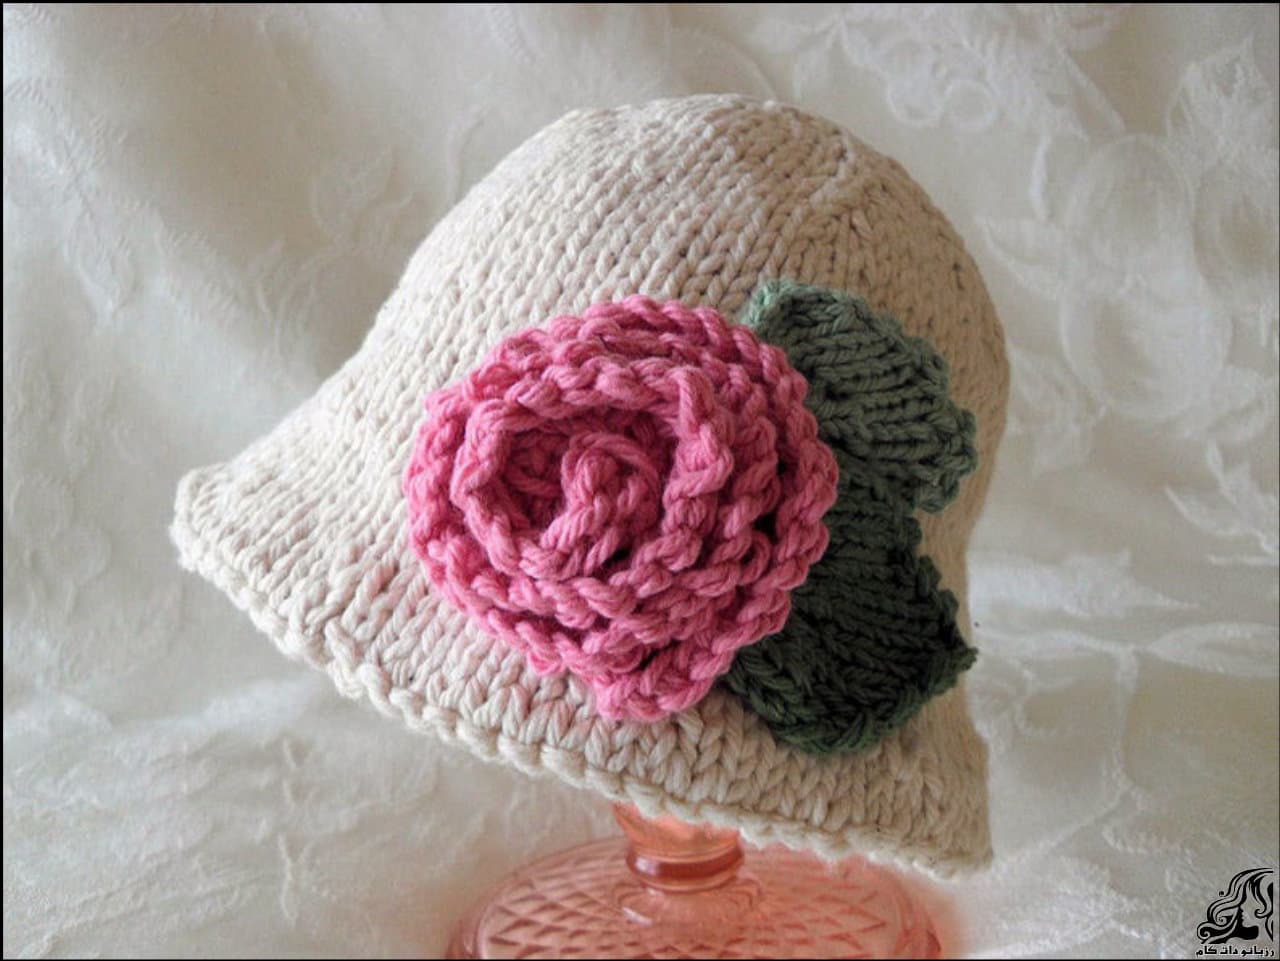 آموزش رج به رج بافت کلاه کودک با یک گل رز در کناره کلاهhttp://up.rozbano.com/view/2893763/Baby%20Hat%20Rose-01.jpg